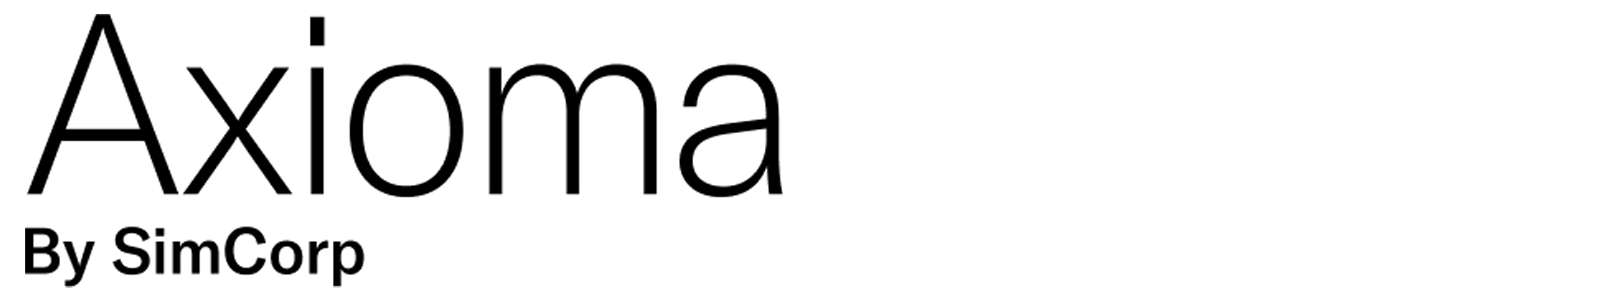 Axioma-logo